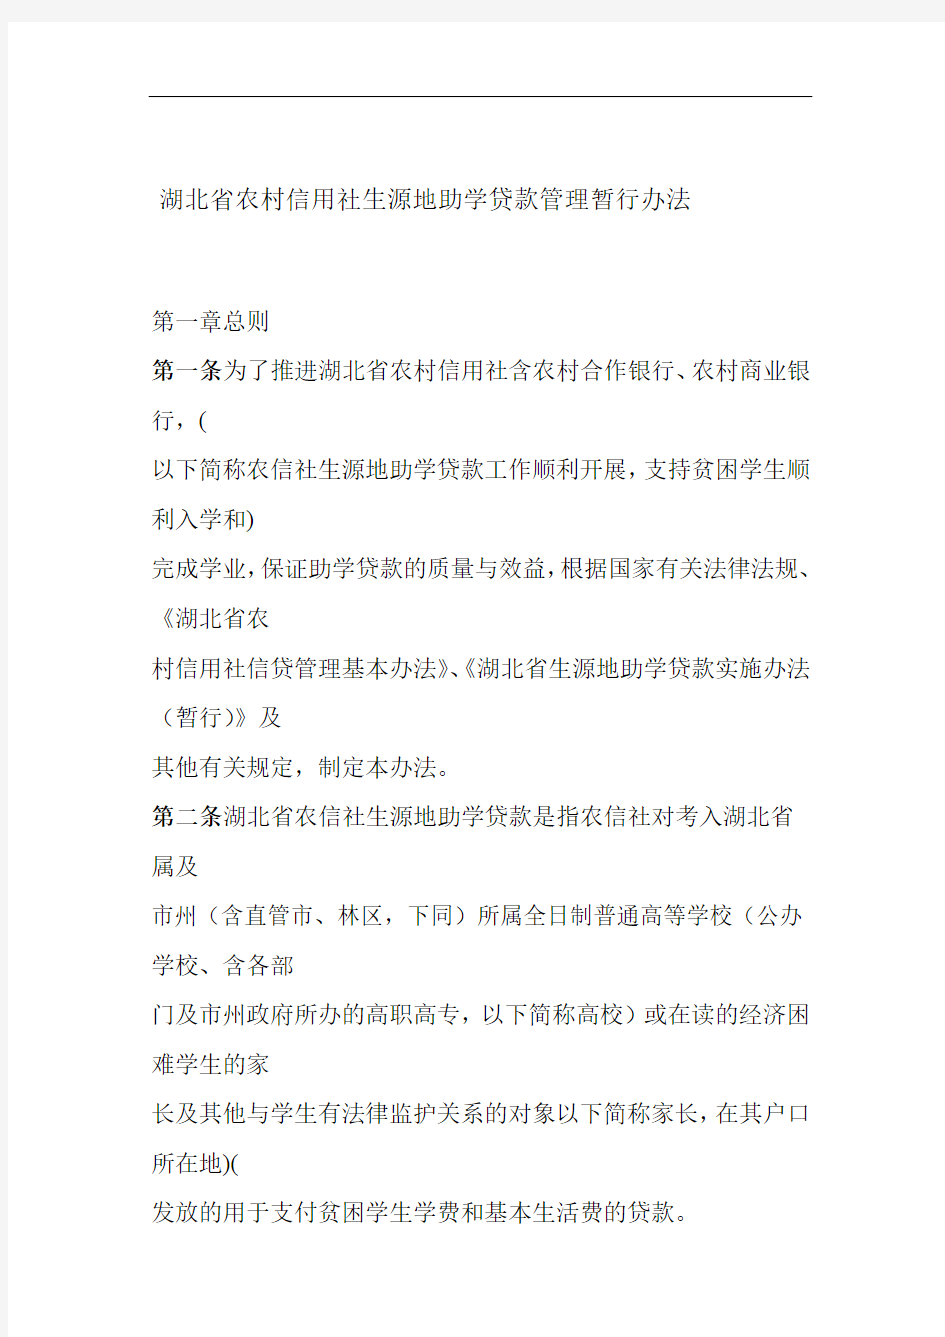 湖北省农村信用社生源地助学贷款管理暂行办法